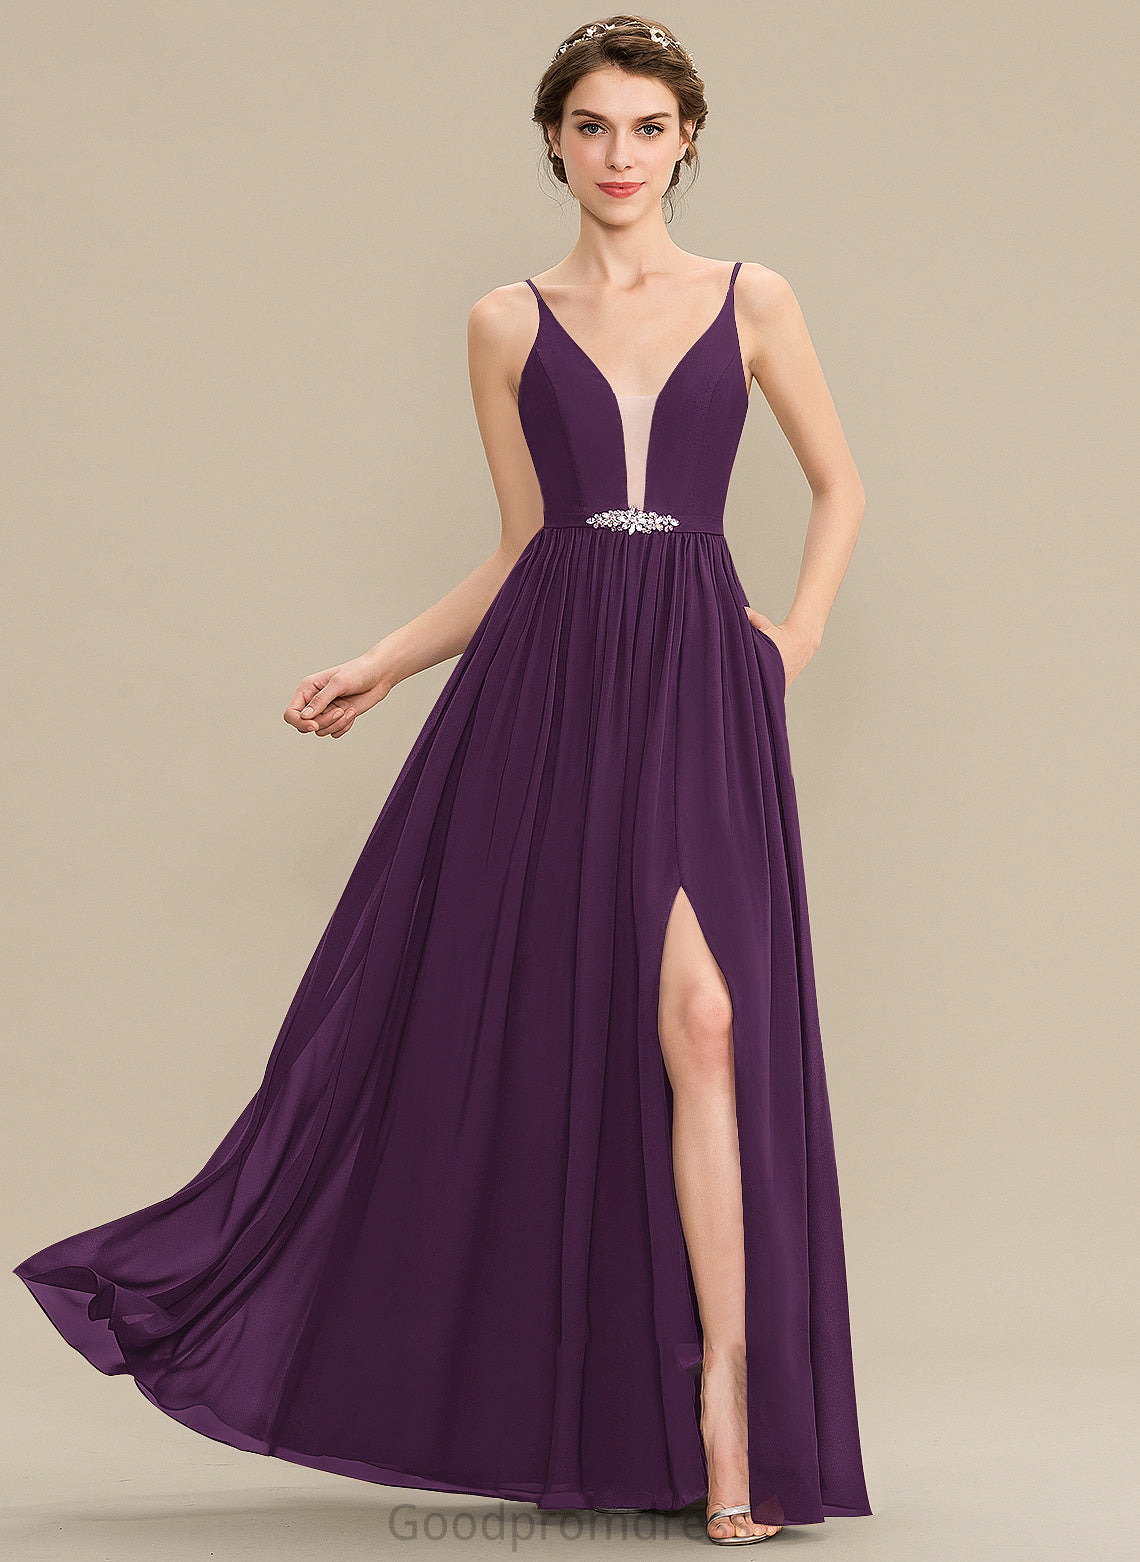 Embellishment Beading Fabric Neckline Floor-Length Silhouette Pockets A-Line V-neck Length SplitFront Sequins Bridesmaid Dresses